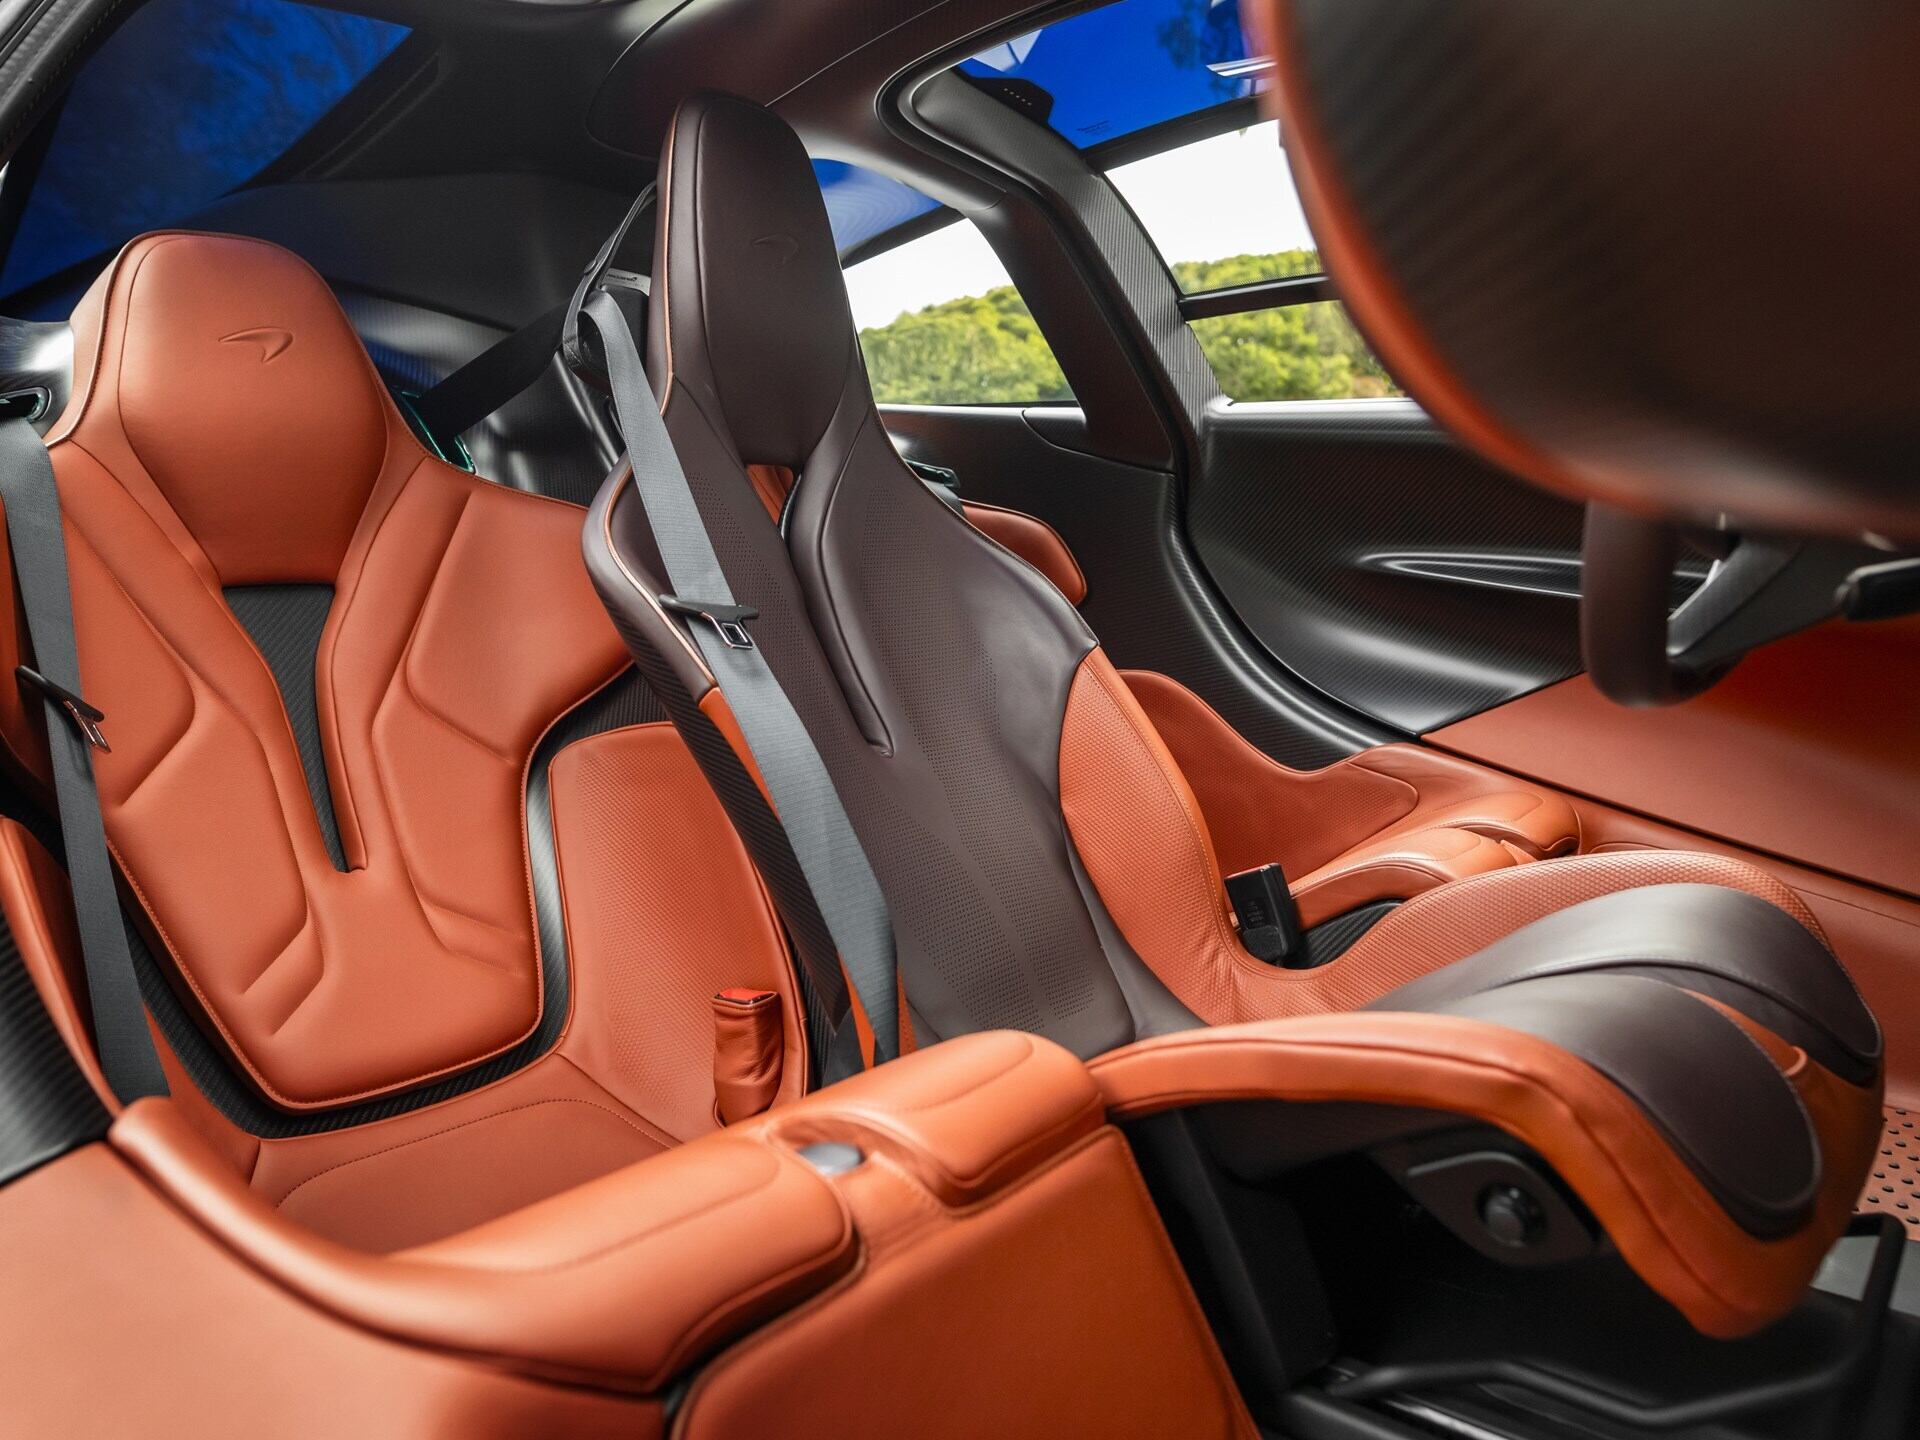 Interior view of a 2020 Grey McLaren Speedtail.